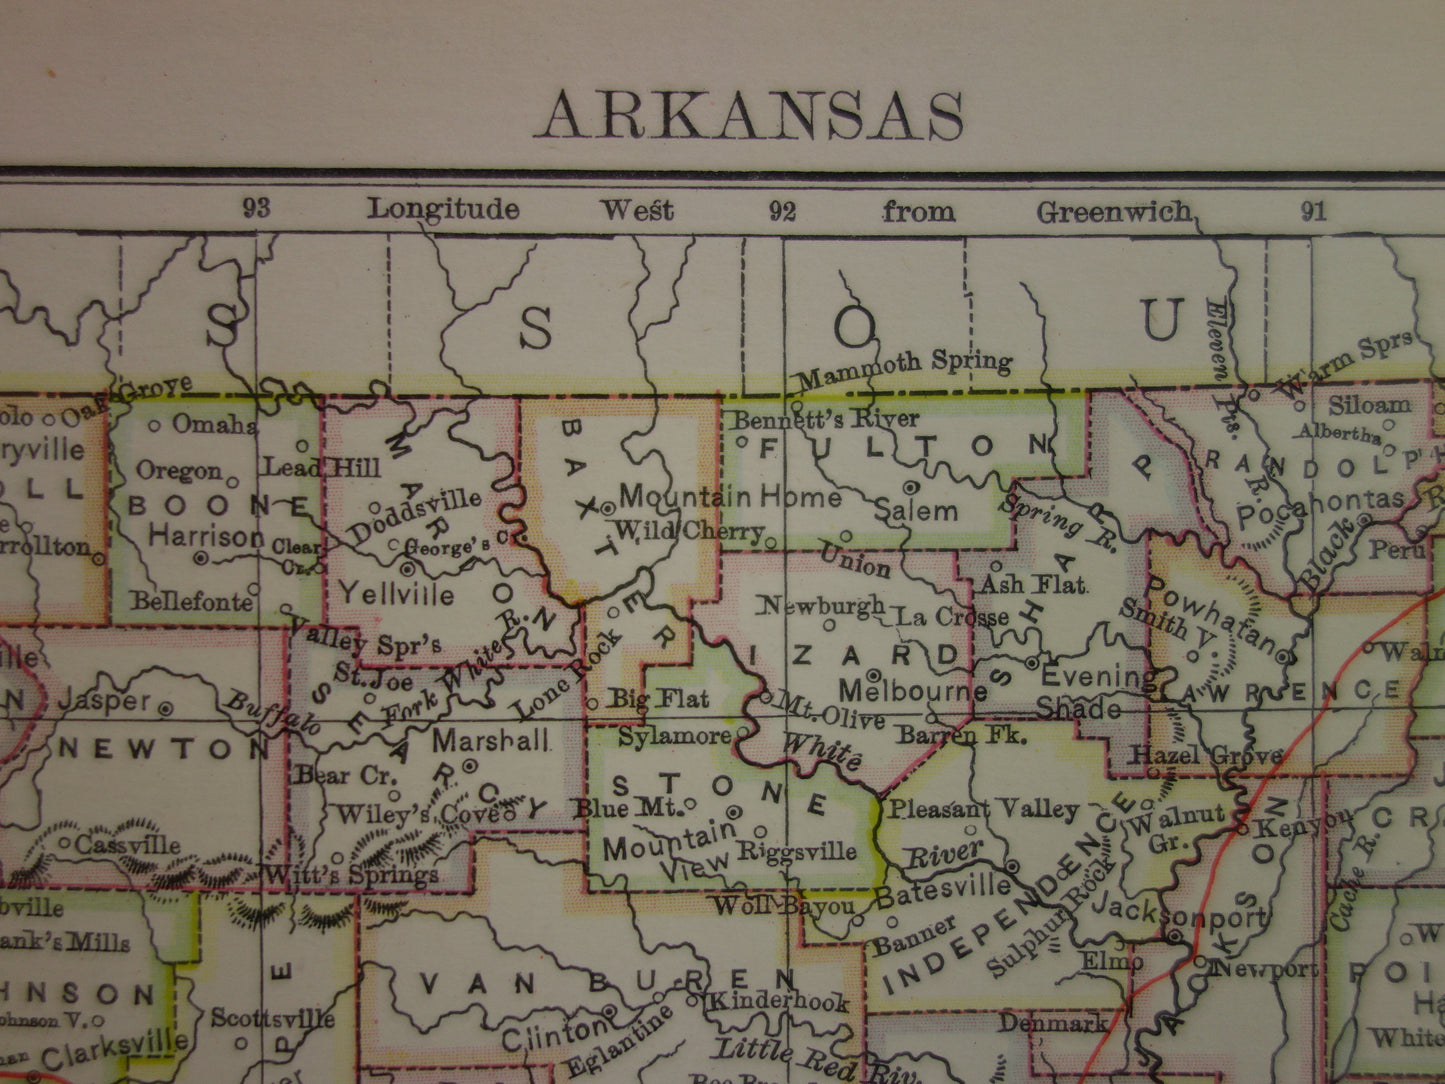 ARKANSAS Antieke landkaart van de staat Arkansas 1875 originele oude kaart Little Rock Fayetteville Fort Smith Hot Springs Colchester VS te koop Verenigde Staten